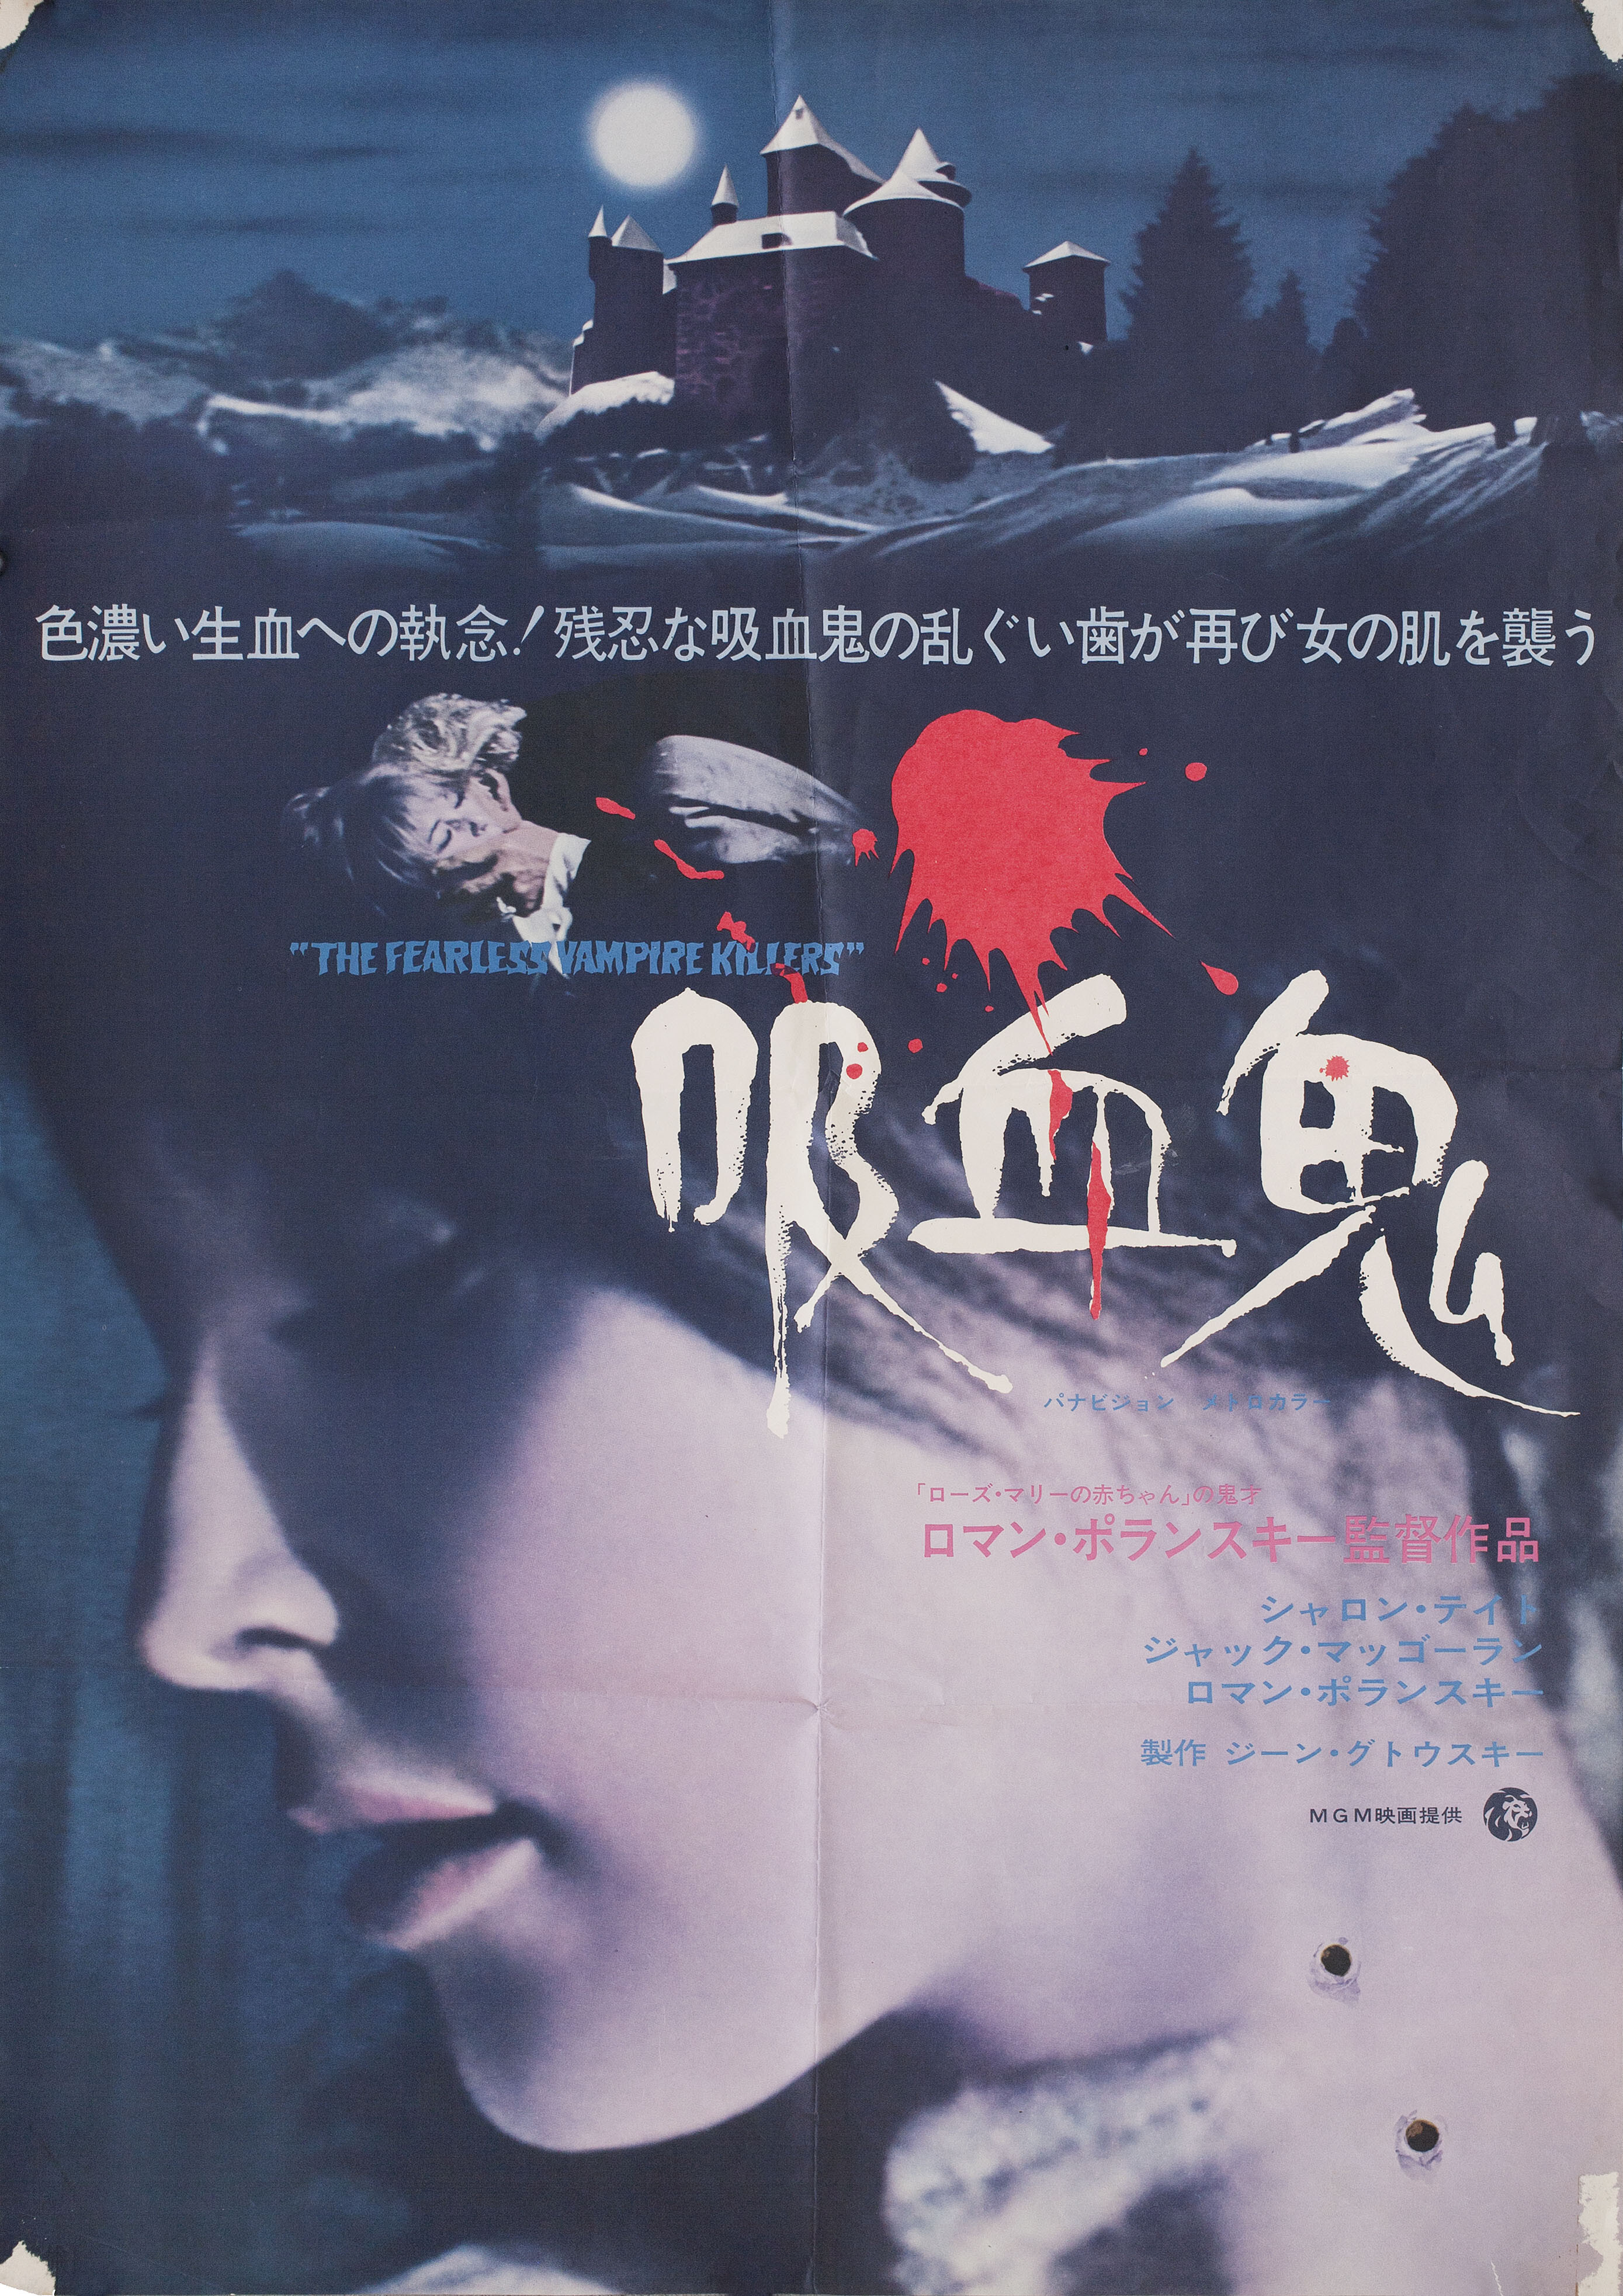 Бесстрашные убийцы вампиров (The Fearless Vampire Killers, 1967), режиссёр Роман Полански, японский постер к фильму (ужасы, 1969 год)